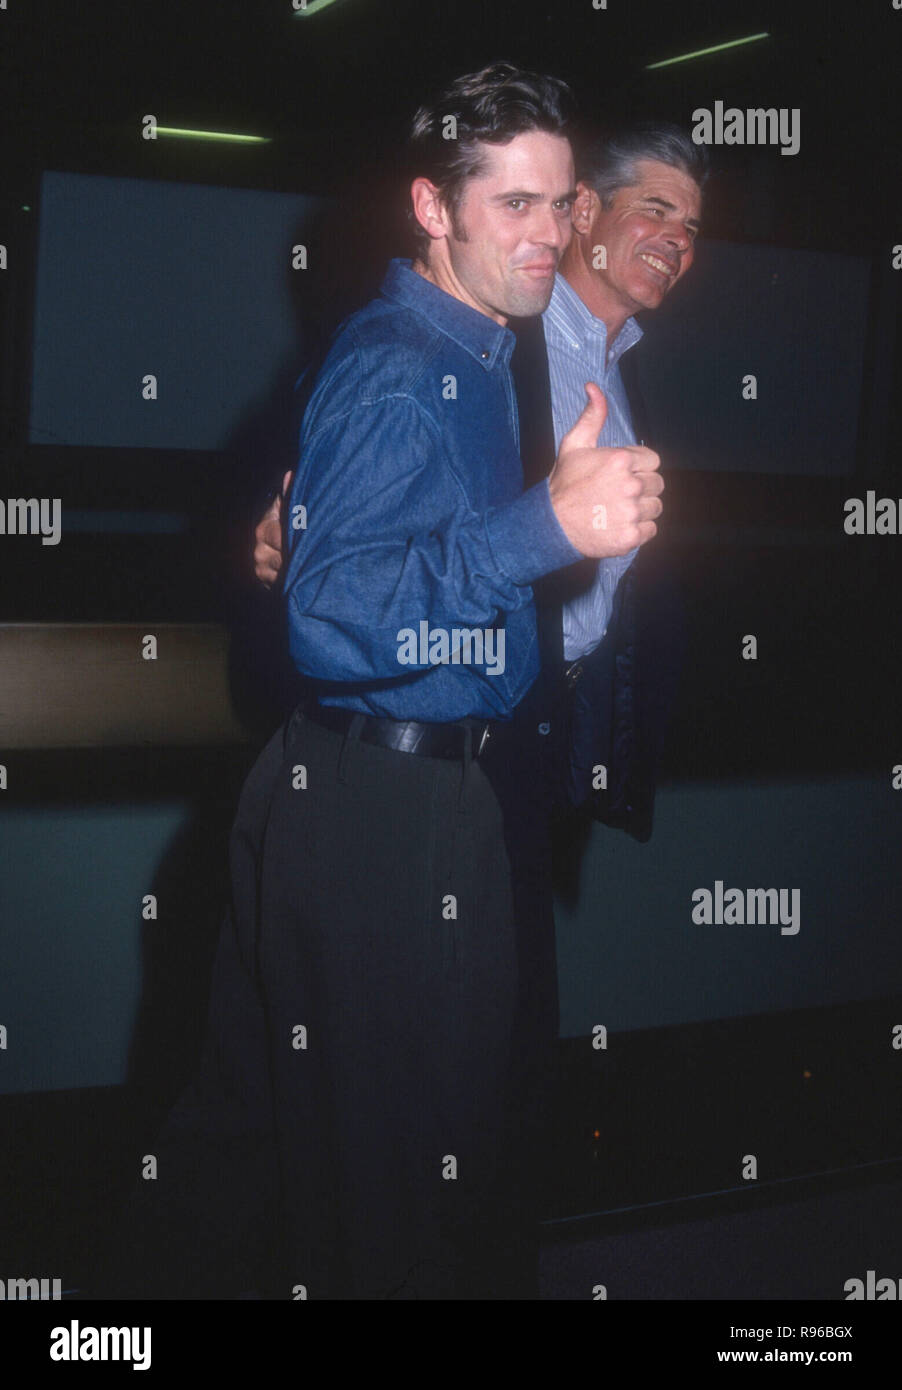 WEST Hollywood, CA - 11. Mai: Schauspieler C Thomas Howell und Vater Chris Howell die Premiere von "American Heart' am 11. Mai 1993 in den Mittelpunkt grüne Theater in West Hollywood, Kalifornien teilnehmen. Foto von Barry King/Alamy Stock Foto Stockfoto